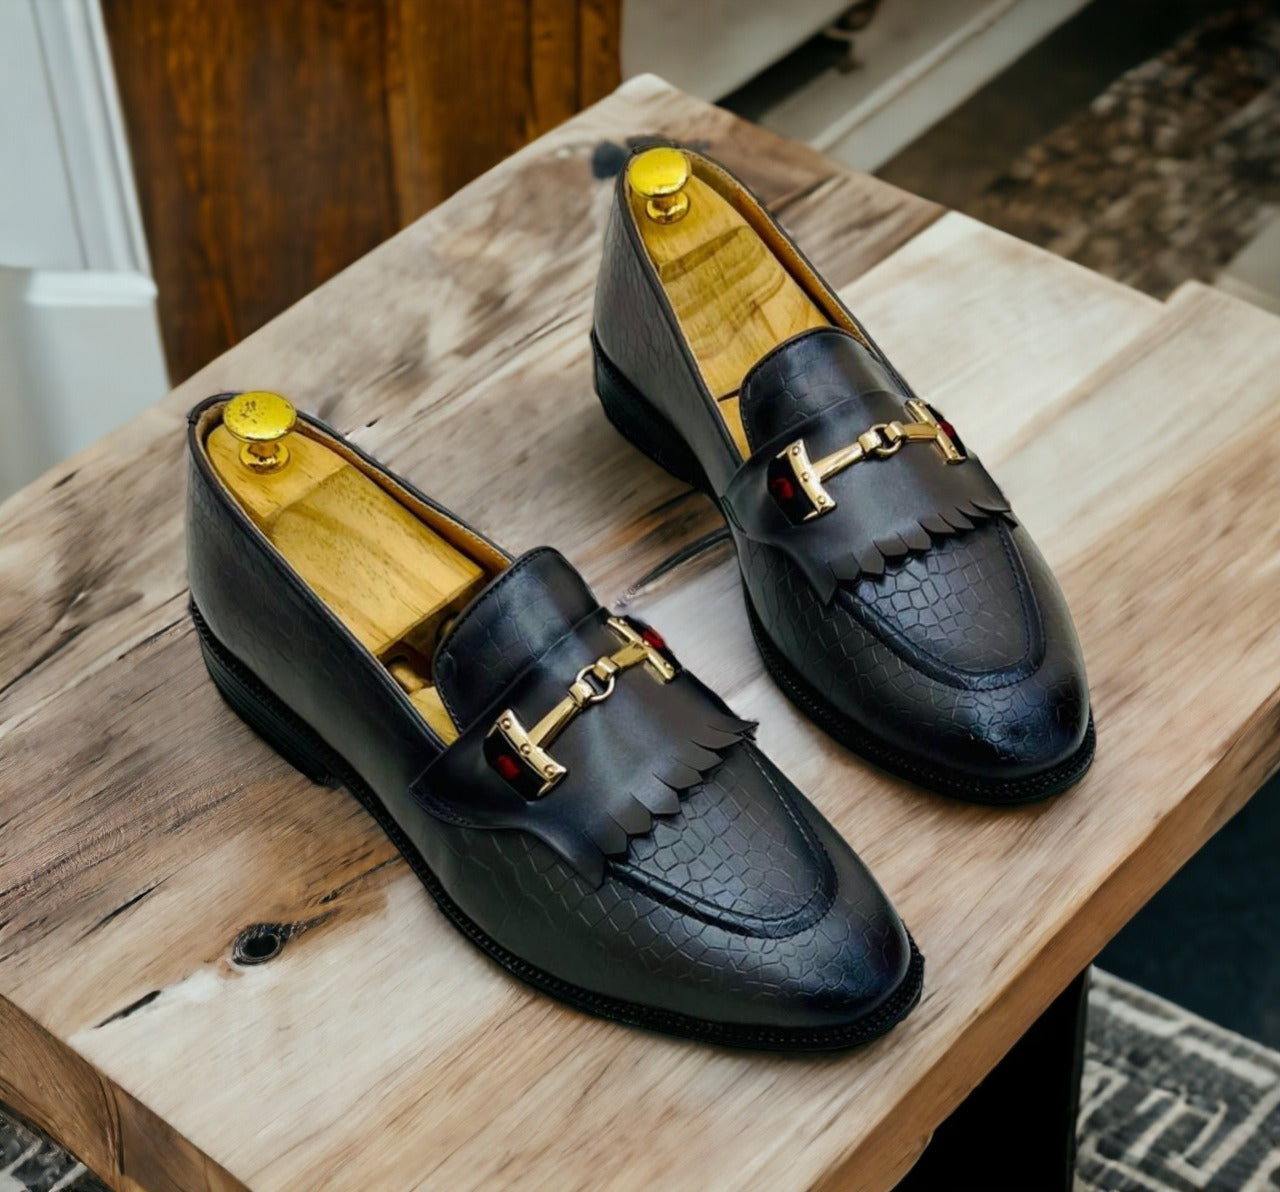 Fashion Croco Loafer Shoes for Men - Versatile Elegance